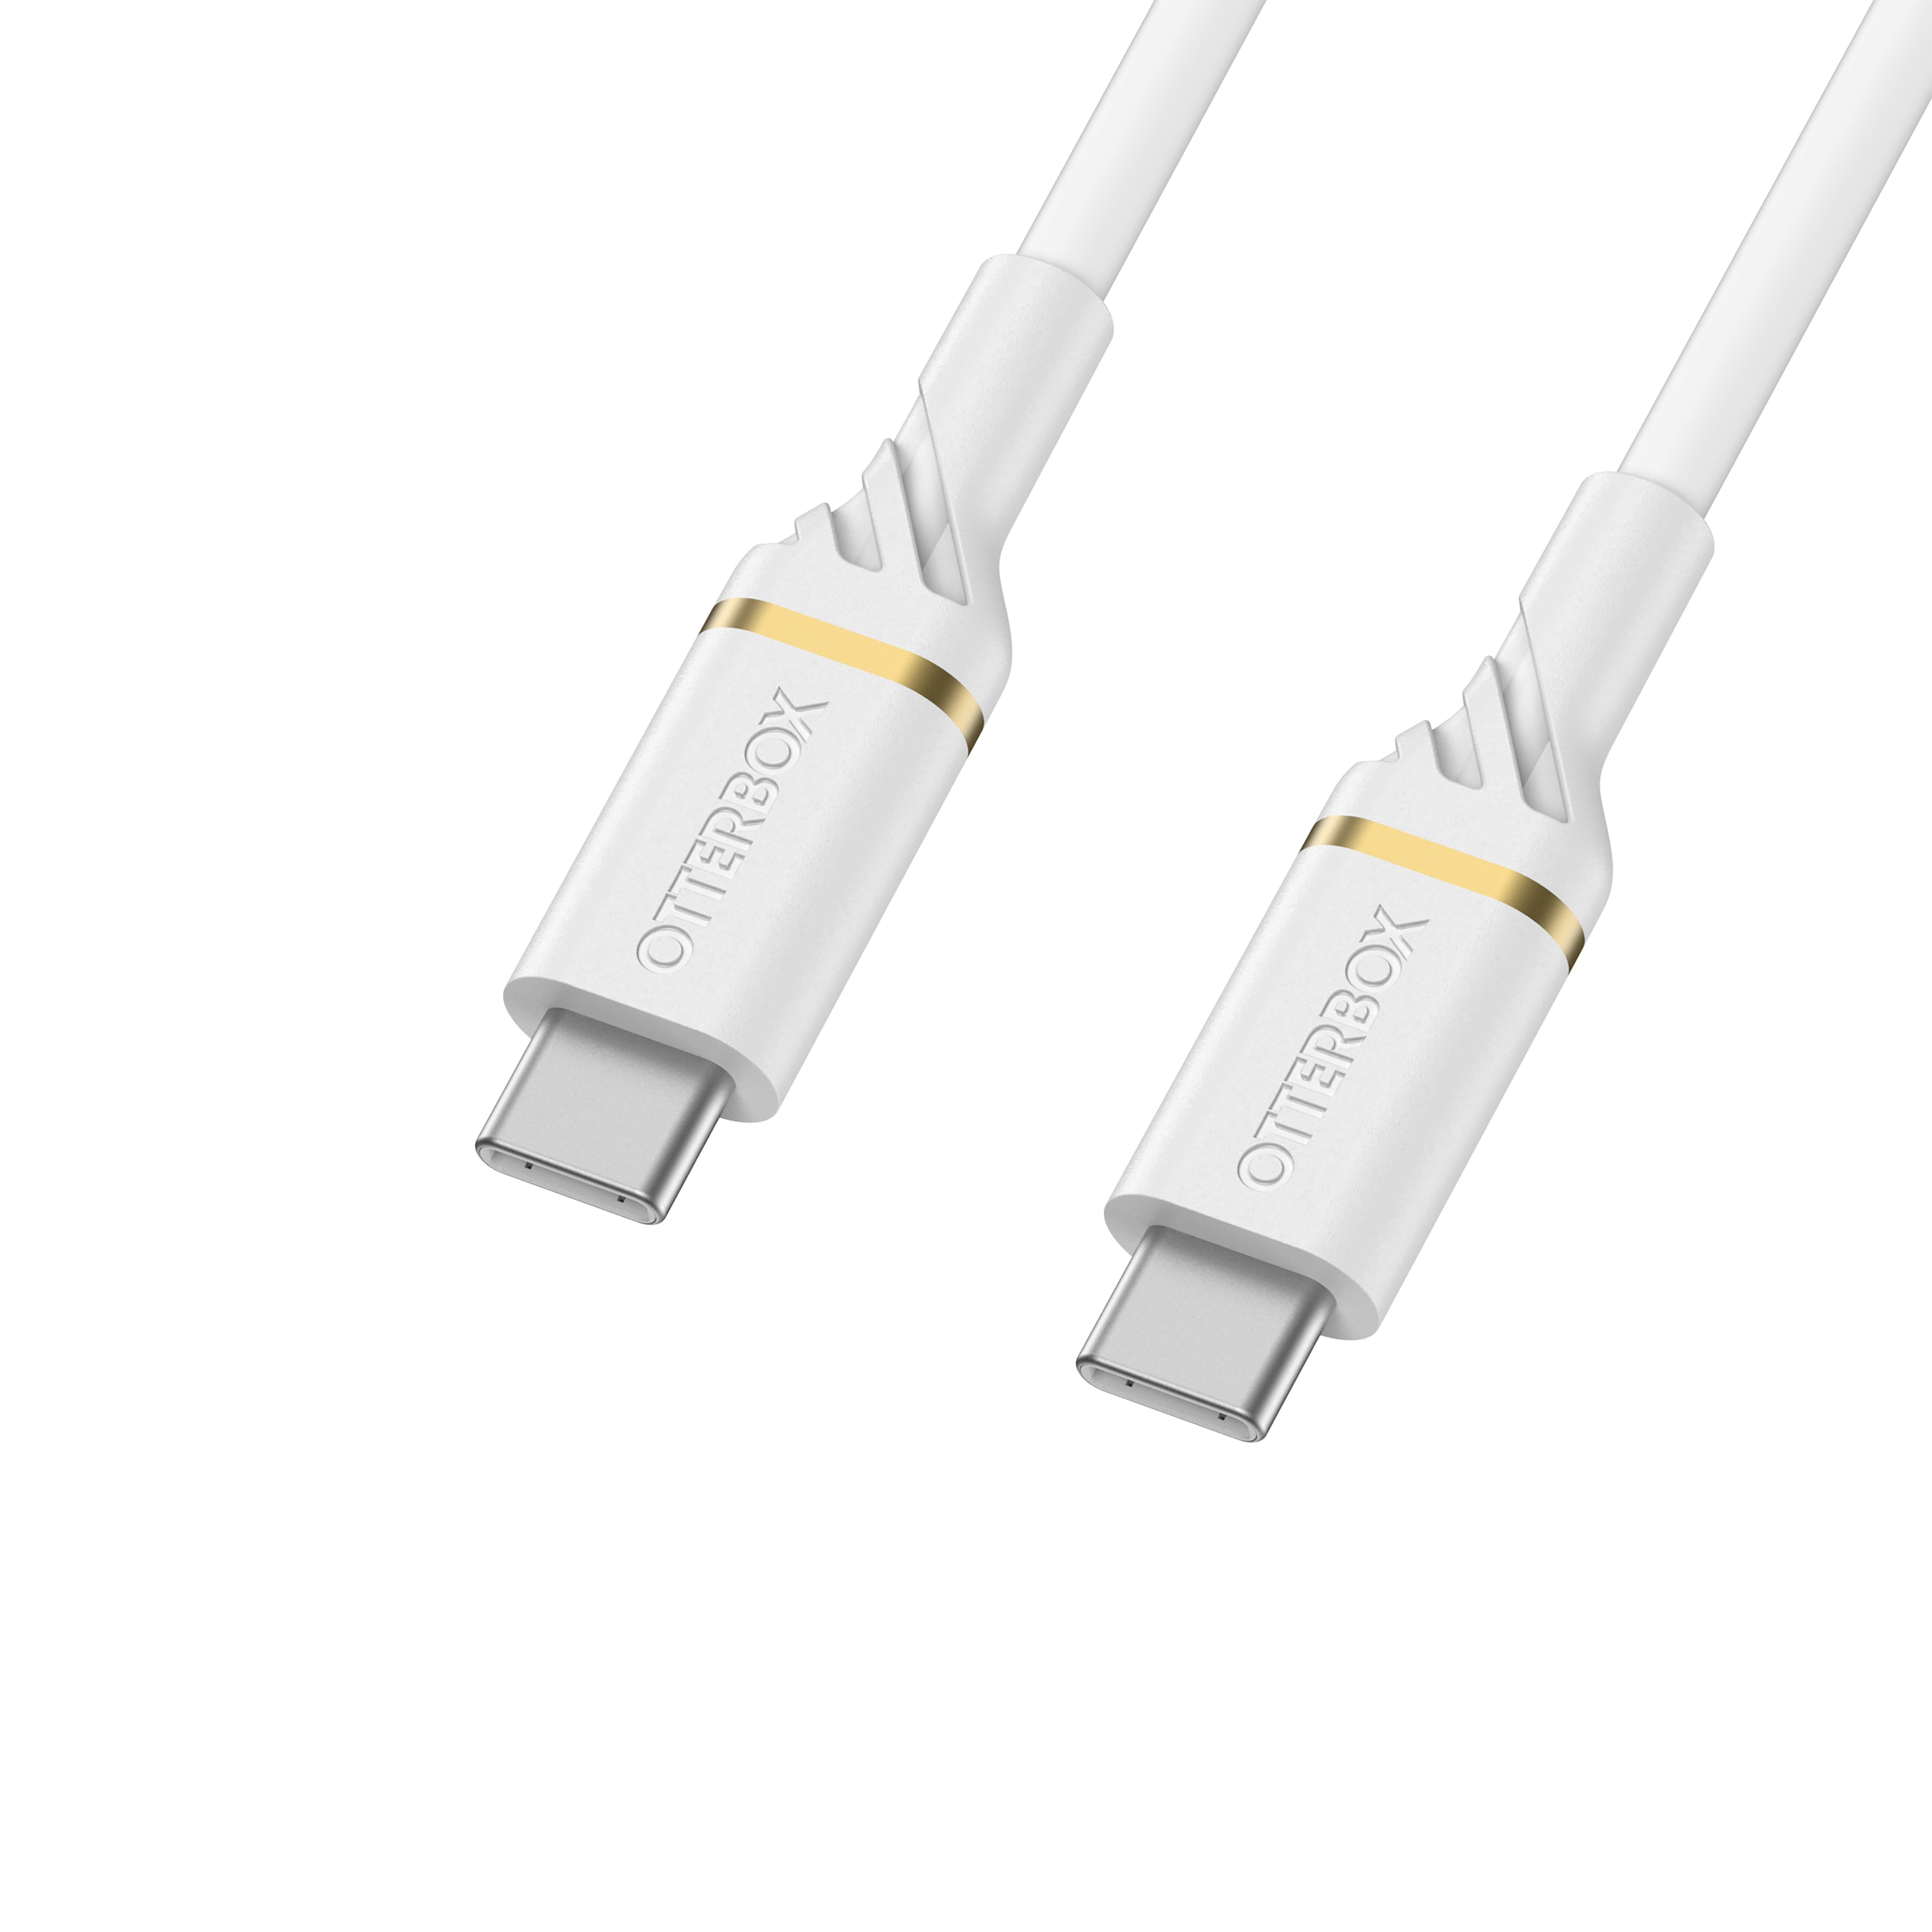 USB-C vers USB-C Câble 1 mètres Fast Charge, blanc